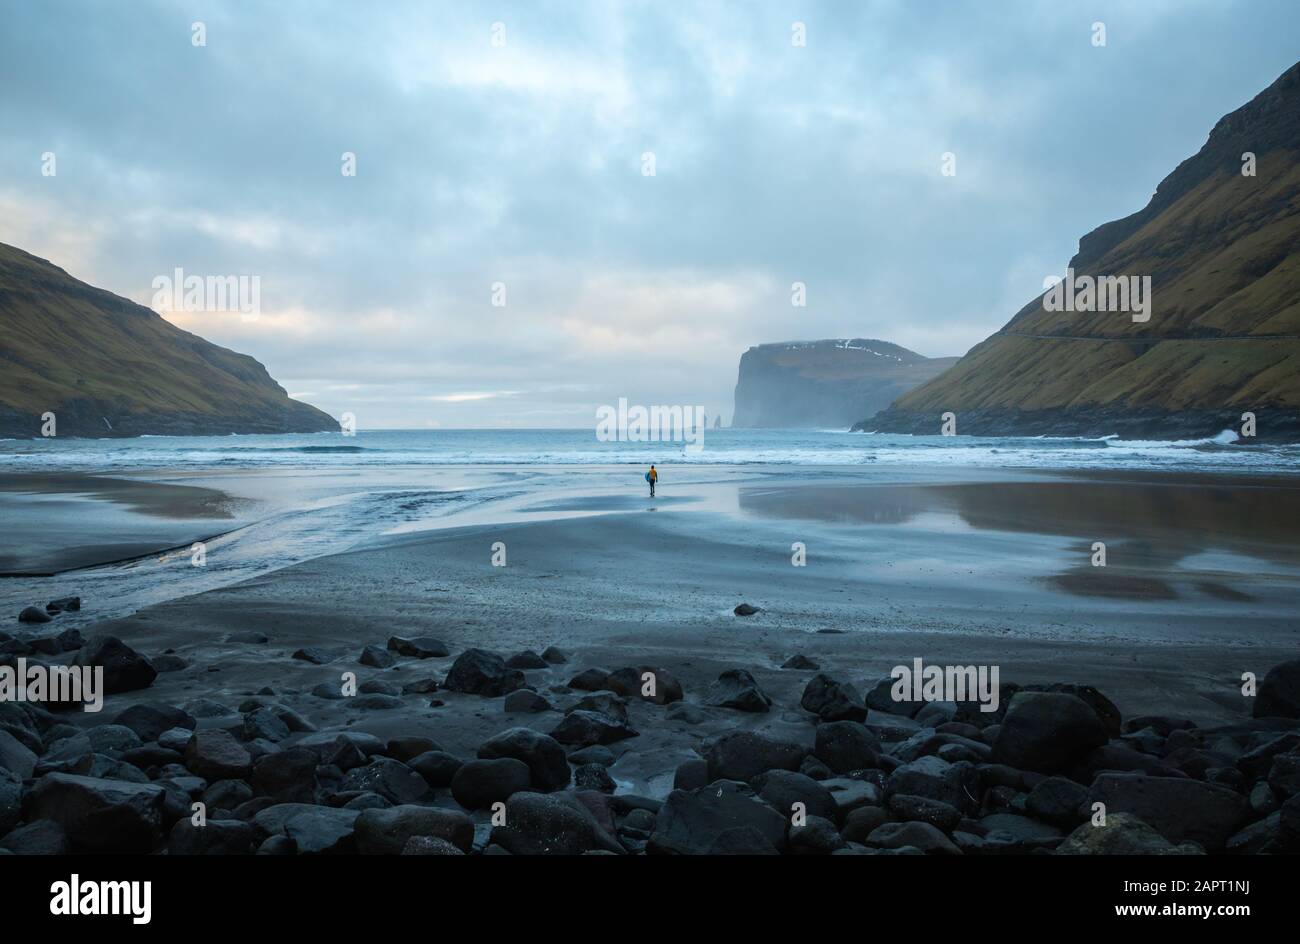 A surfer on the sandy beach of Tjørnuvík walking alone towards the ocean. Faroe Islands Stock Photo